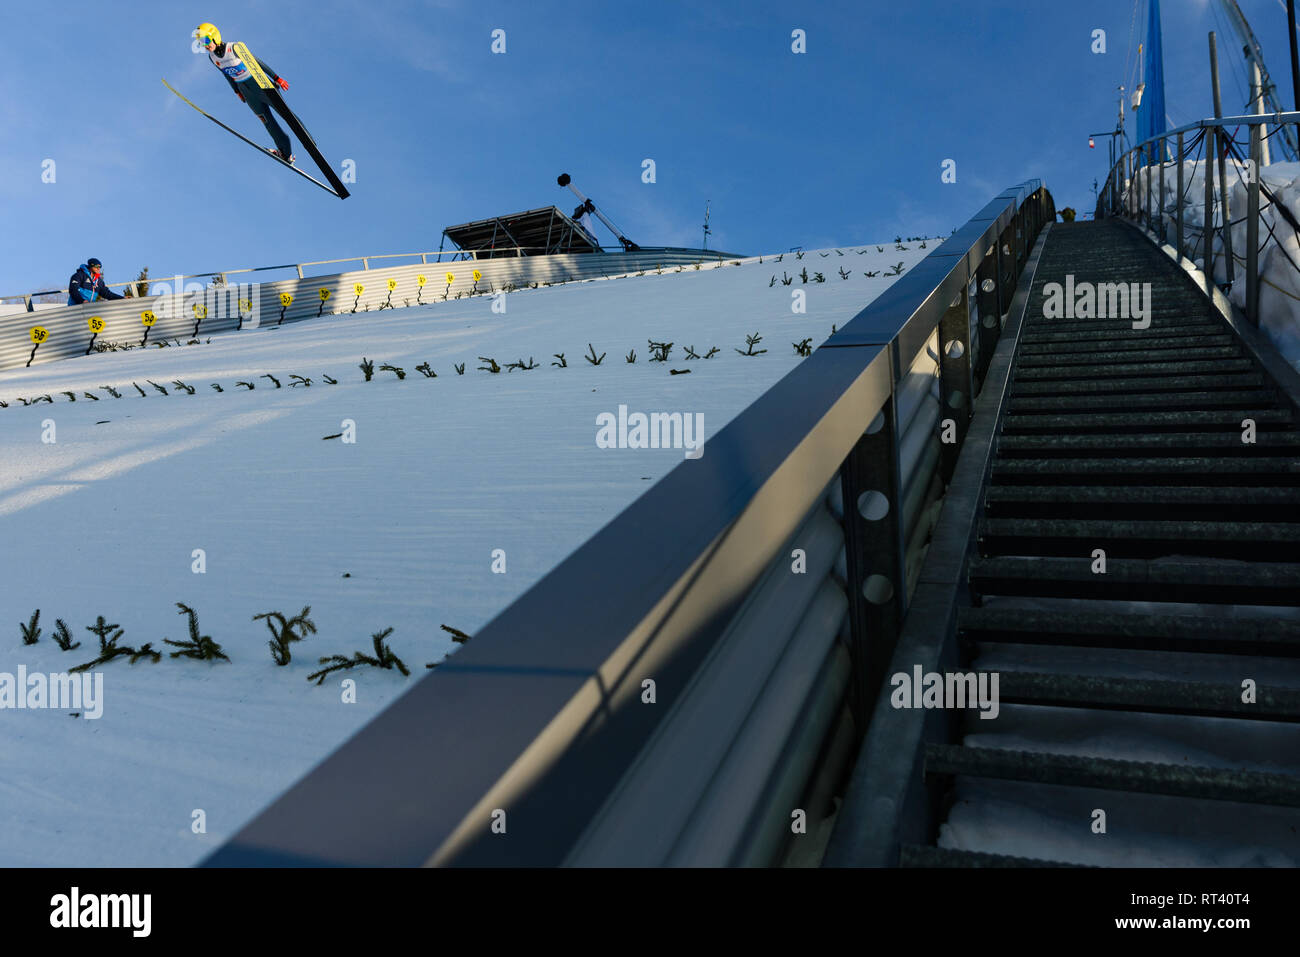 Seefeld, Austria, 26 de febrero. 2019. Puente de esquí durante el campeonato mundial de esquí nórdico. © John Lazenby/Alamy Live News. Foto de stock